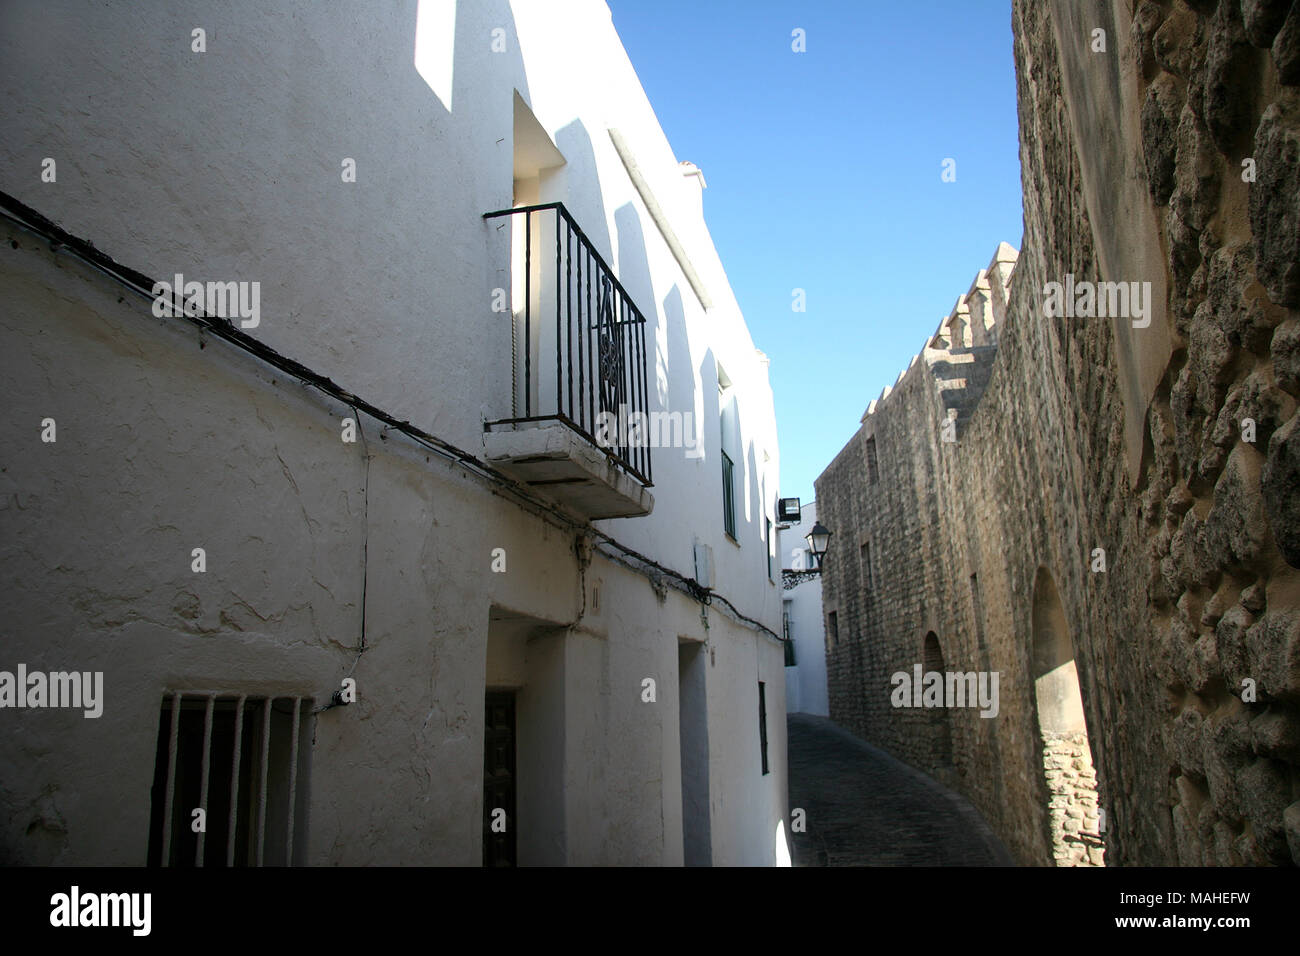 Street scene from Vejer de la Frontera in Spain Stock Photo